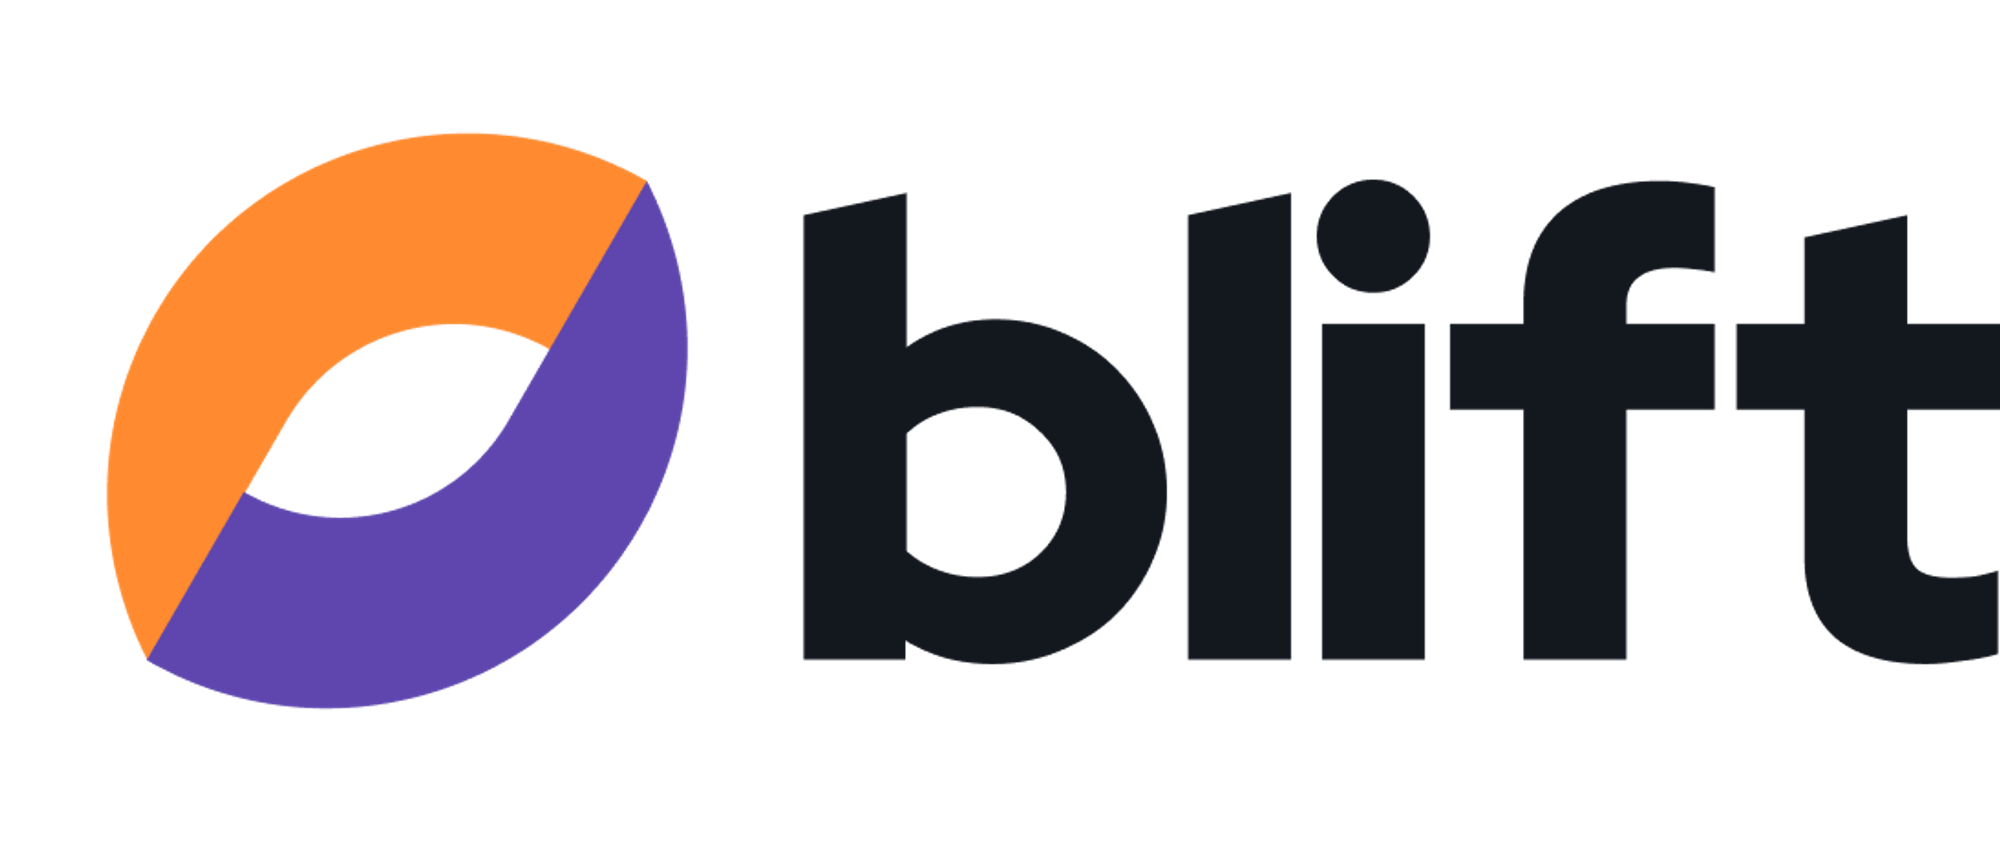 Modern logo design for blift.co